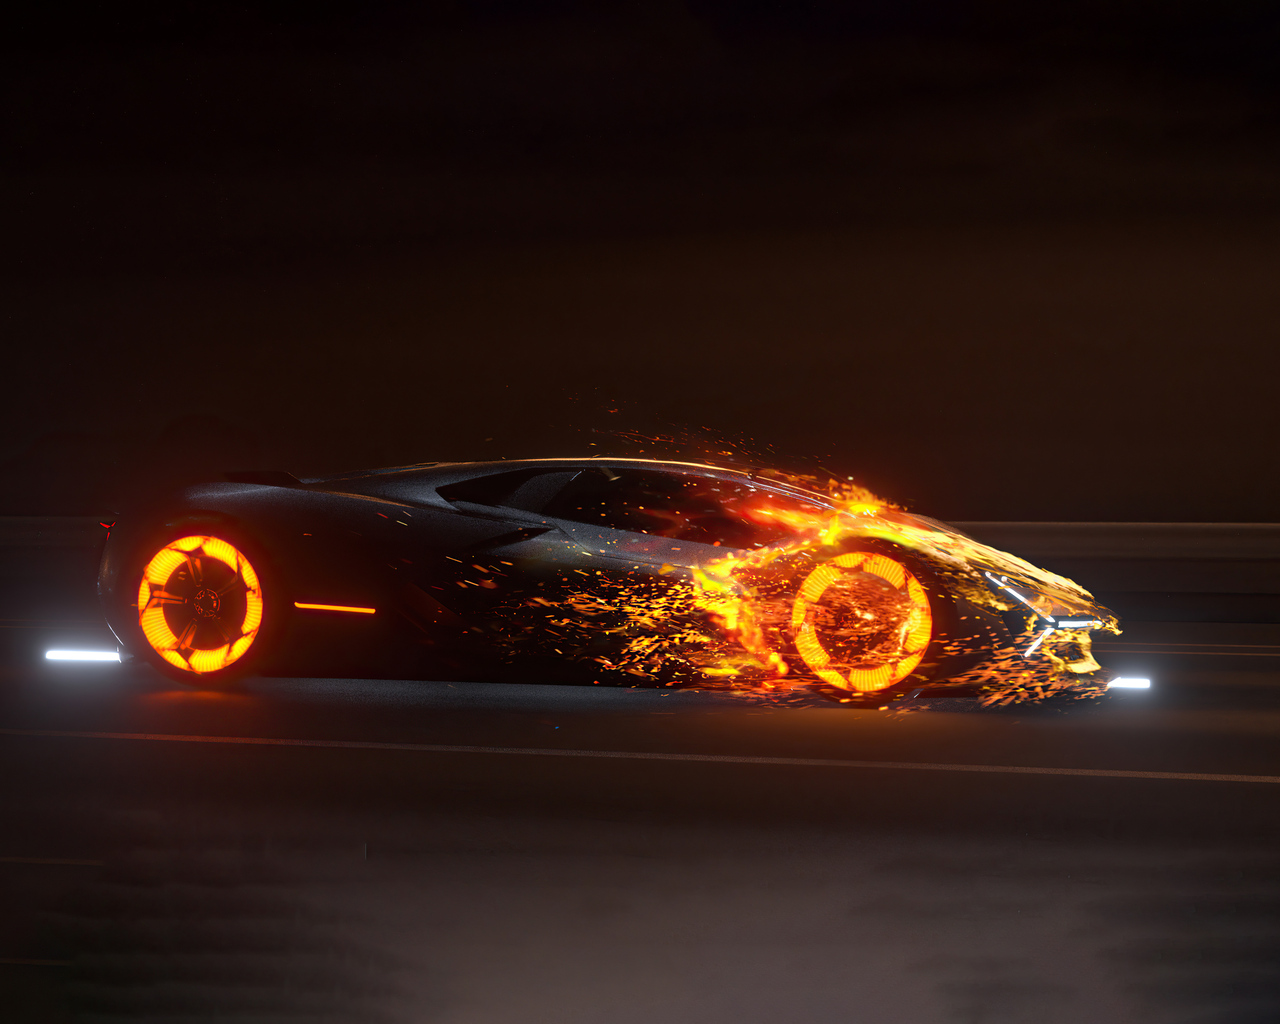 1280x1024 Lamborghini In Flames 5k 1280x1024 Resolution HD 4k